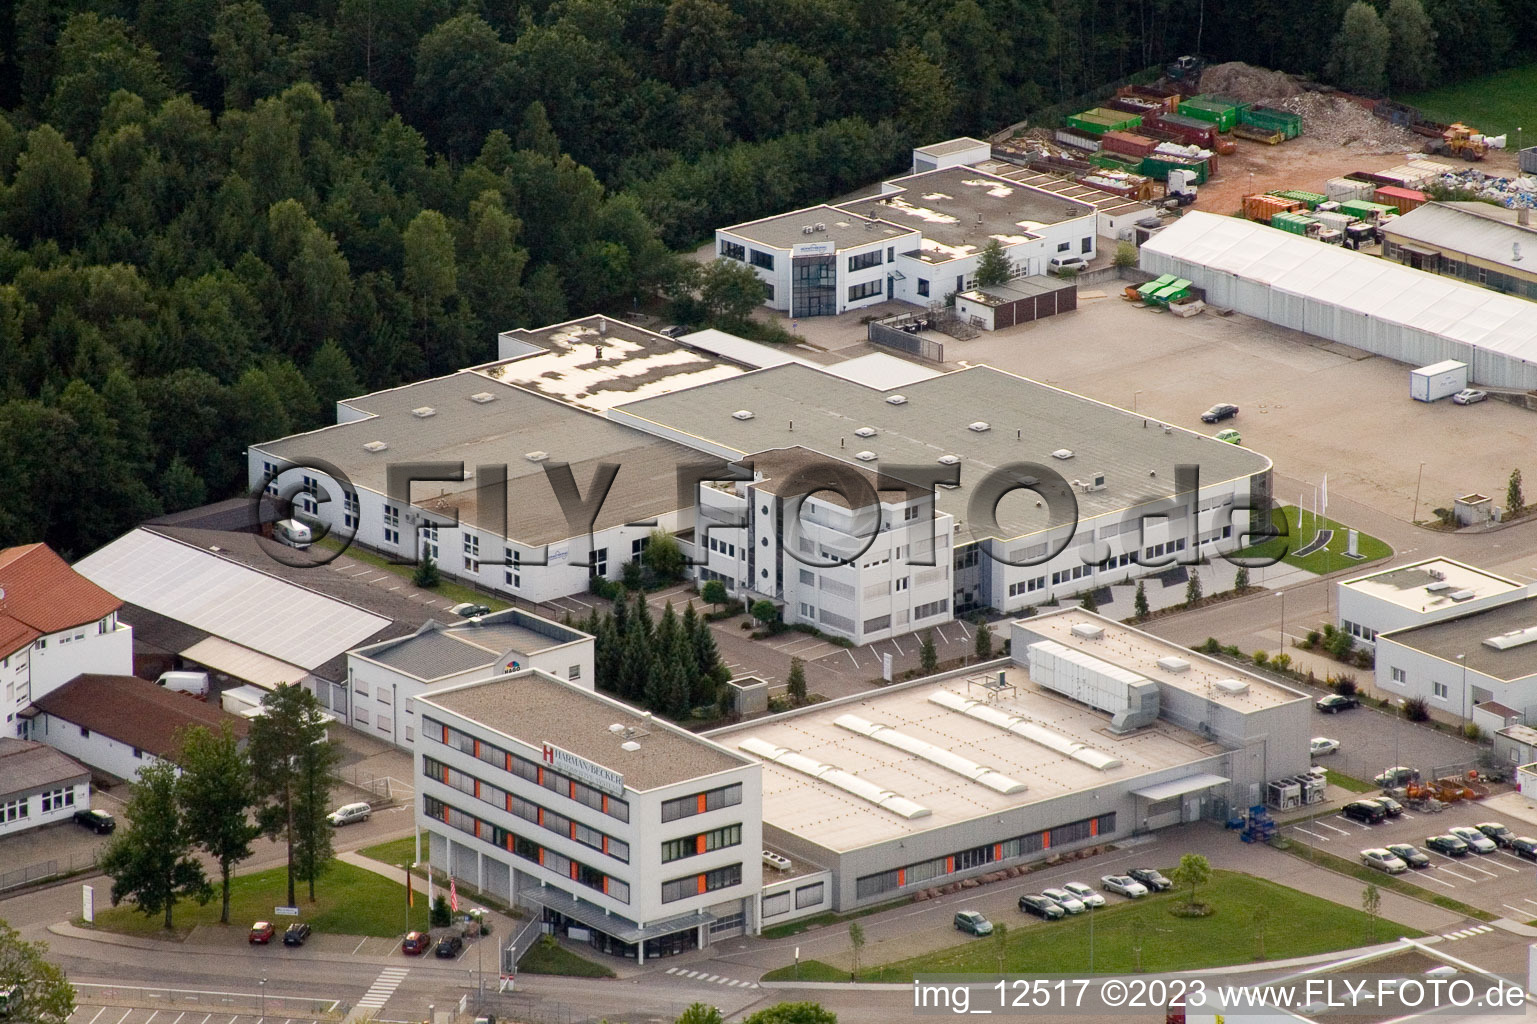 Vue oblique de Ittersbach, zone industrielle à le quartier Im Stockmädle in Karlsbad dans le département Bade-Wurtemberg, Allemagne